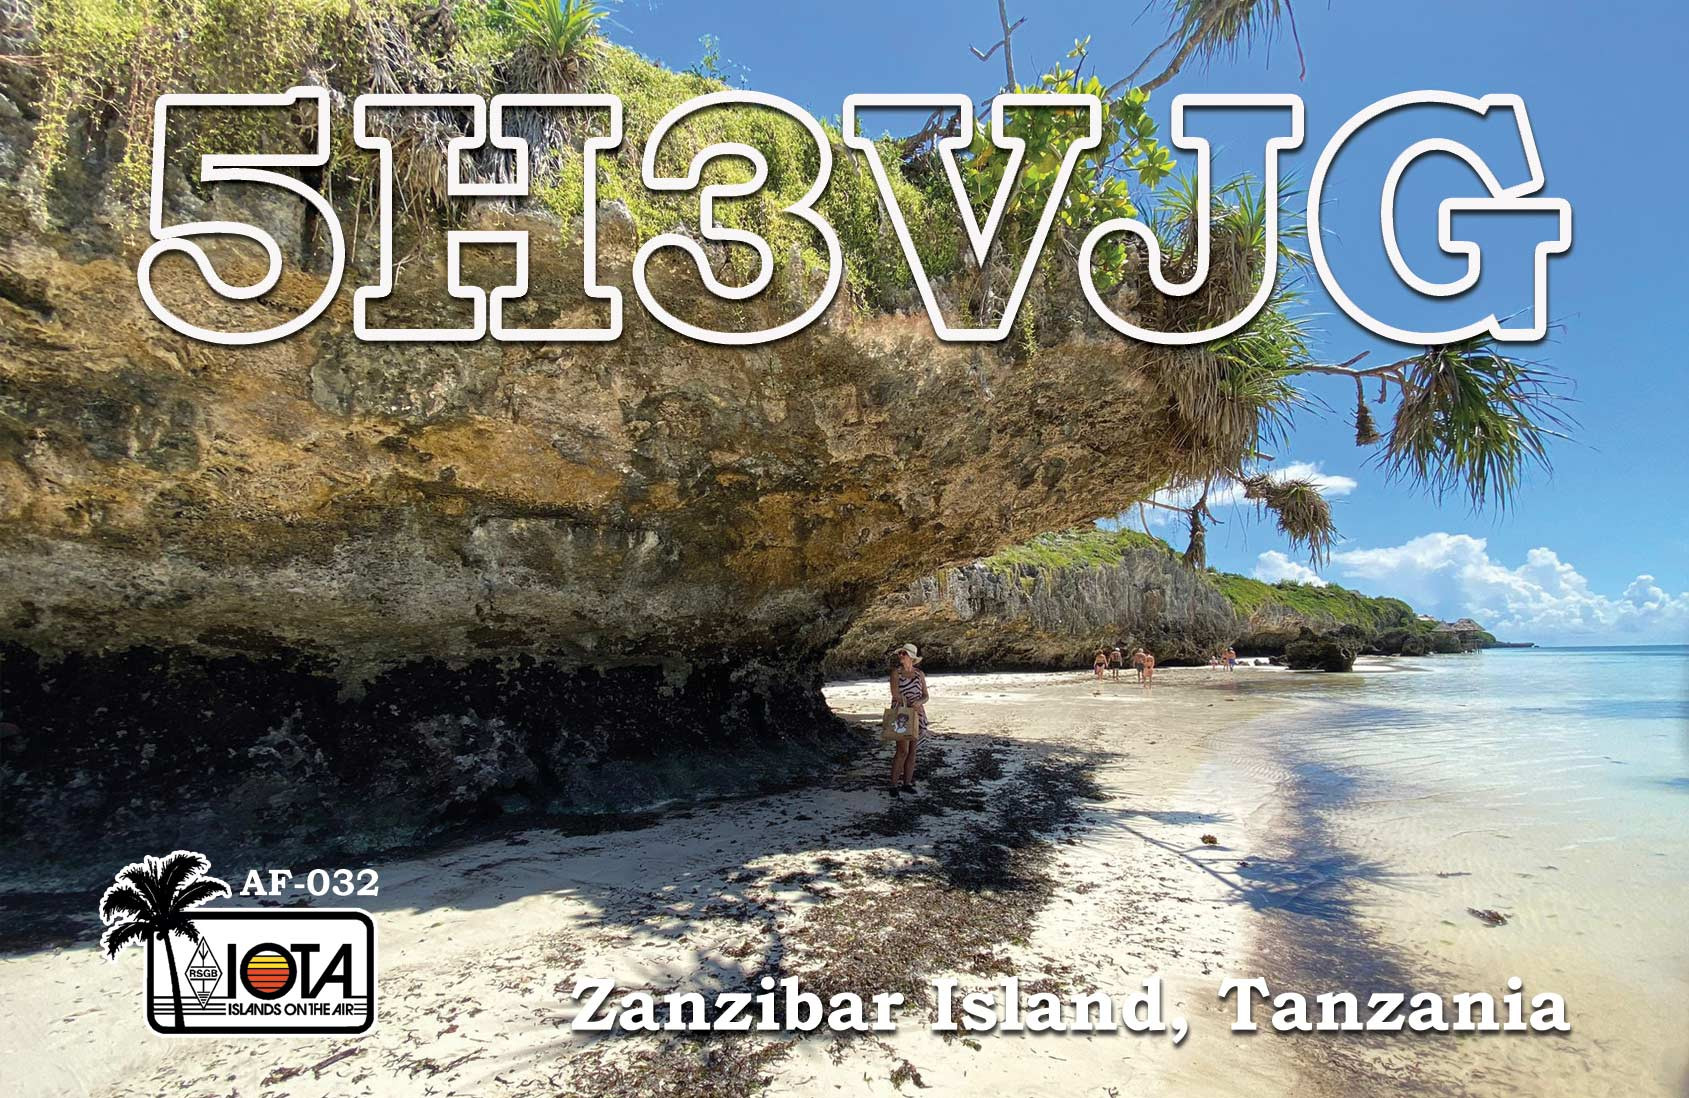 5H3VJG Zanzibar Island, Tanzania QSL Card